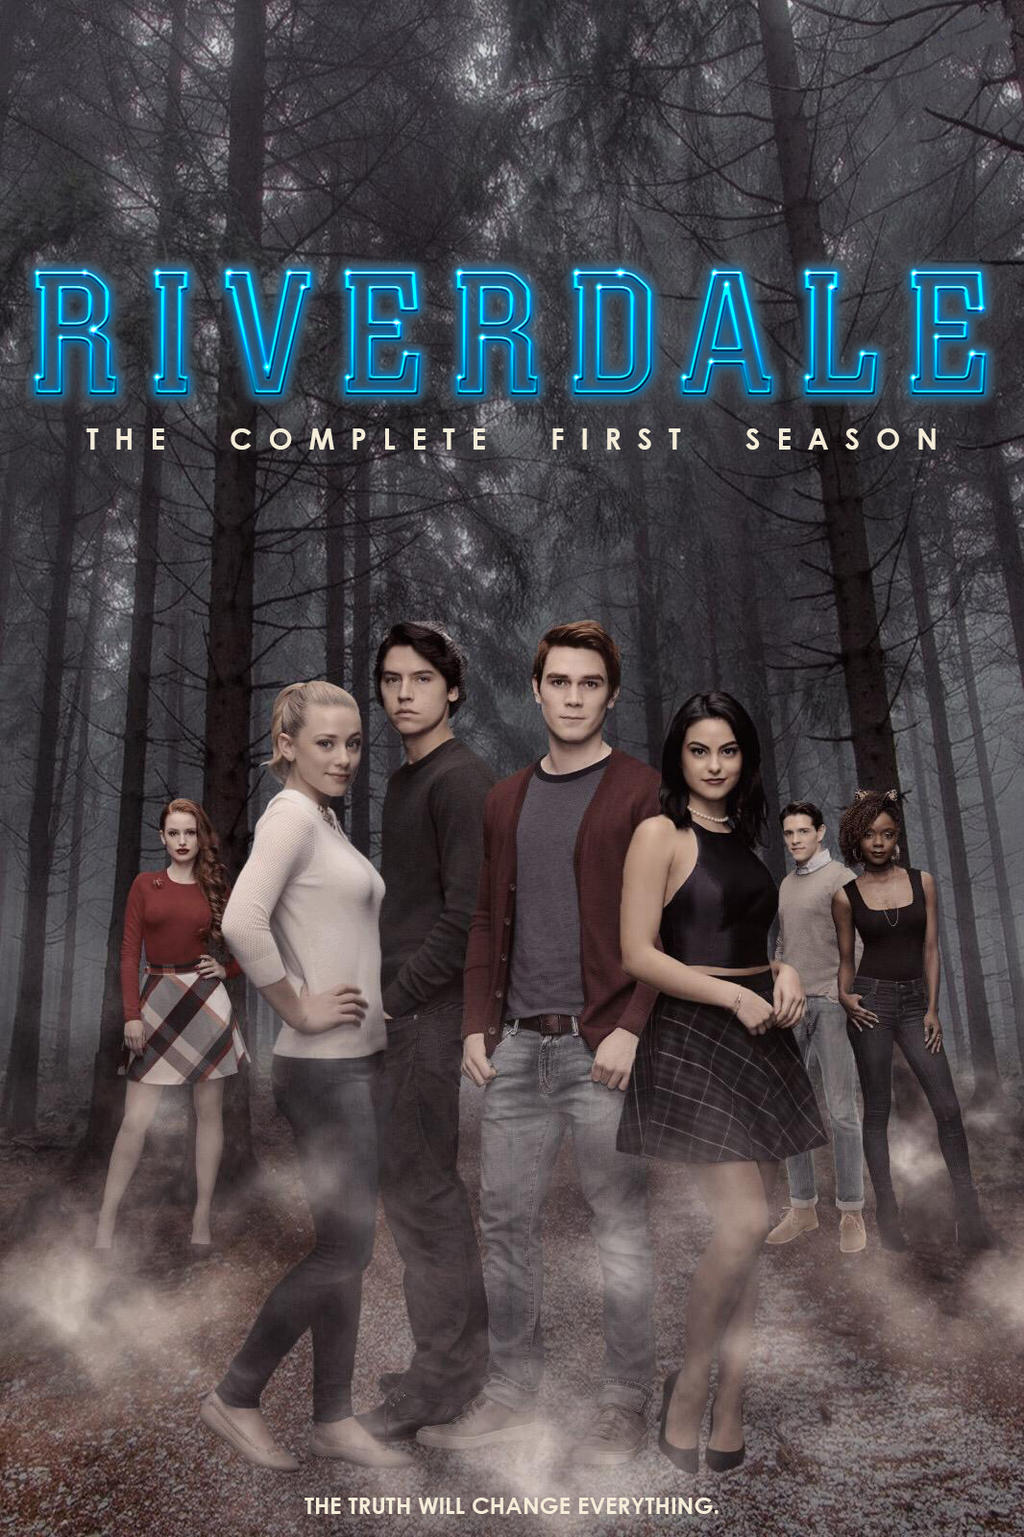 Riverdale - Season 1 by maki07cro on DeviantArt